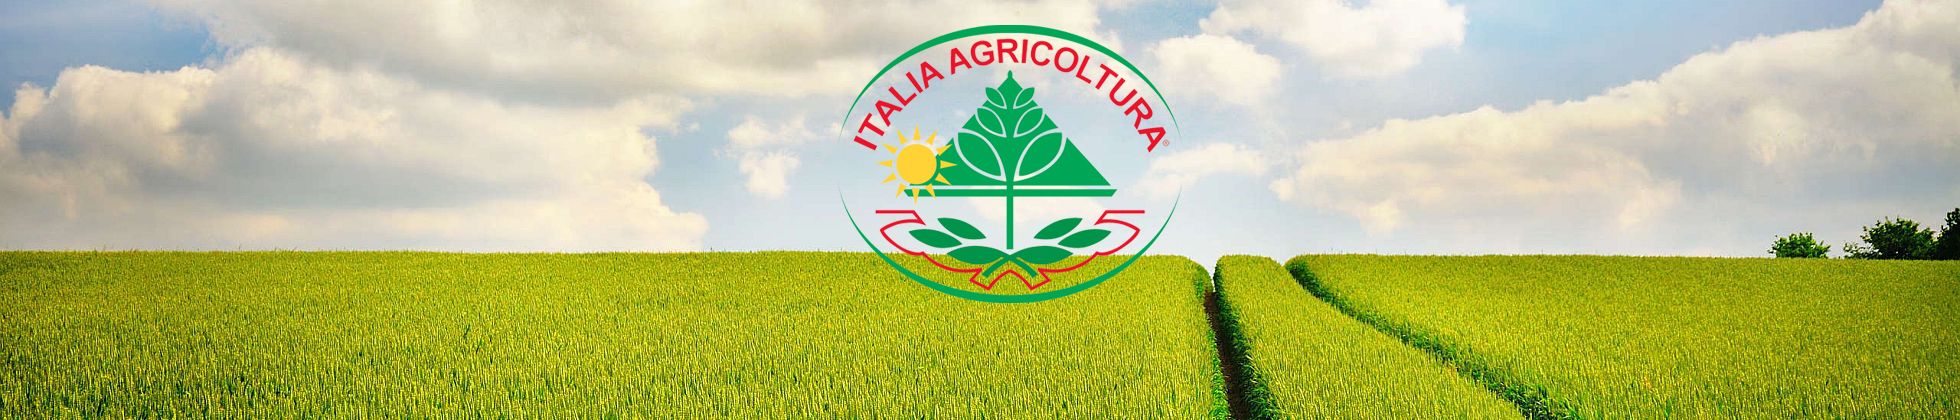 Italia Agricoltura Vendita e produzione Sementi